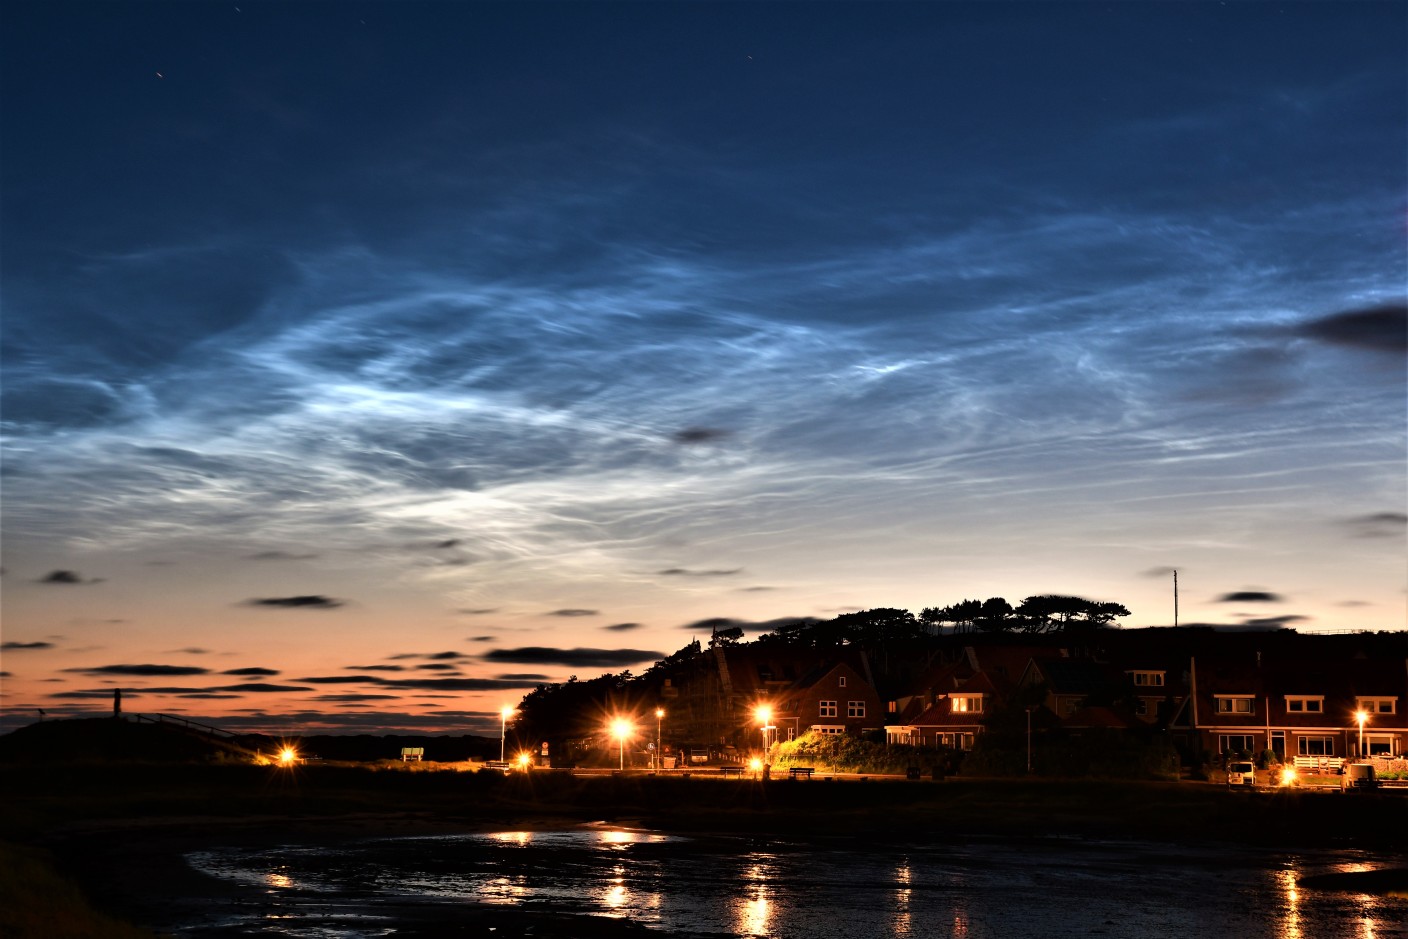 Foto gemaakt door Sytse Schoustra - Terschelling - Boven Terschelling waren gisteravond opnieuw prachtige lichtende nachtwolken te zien.